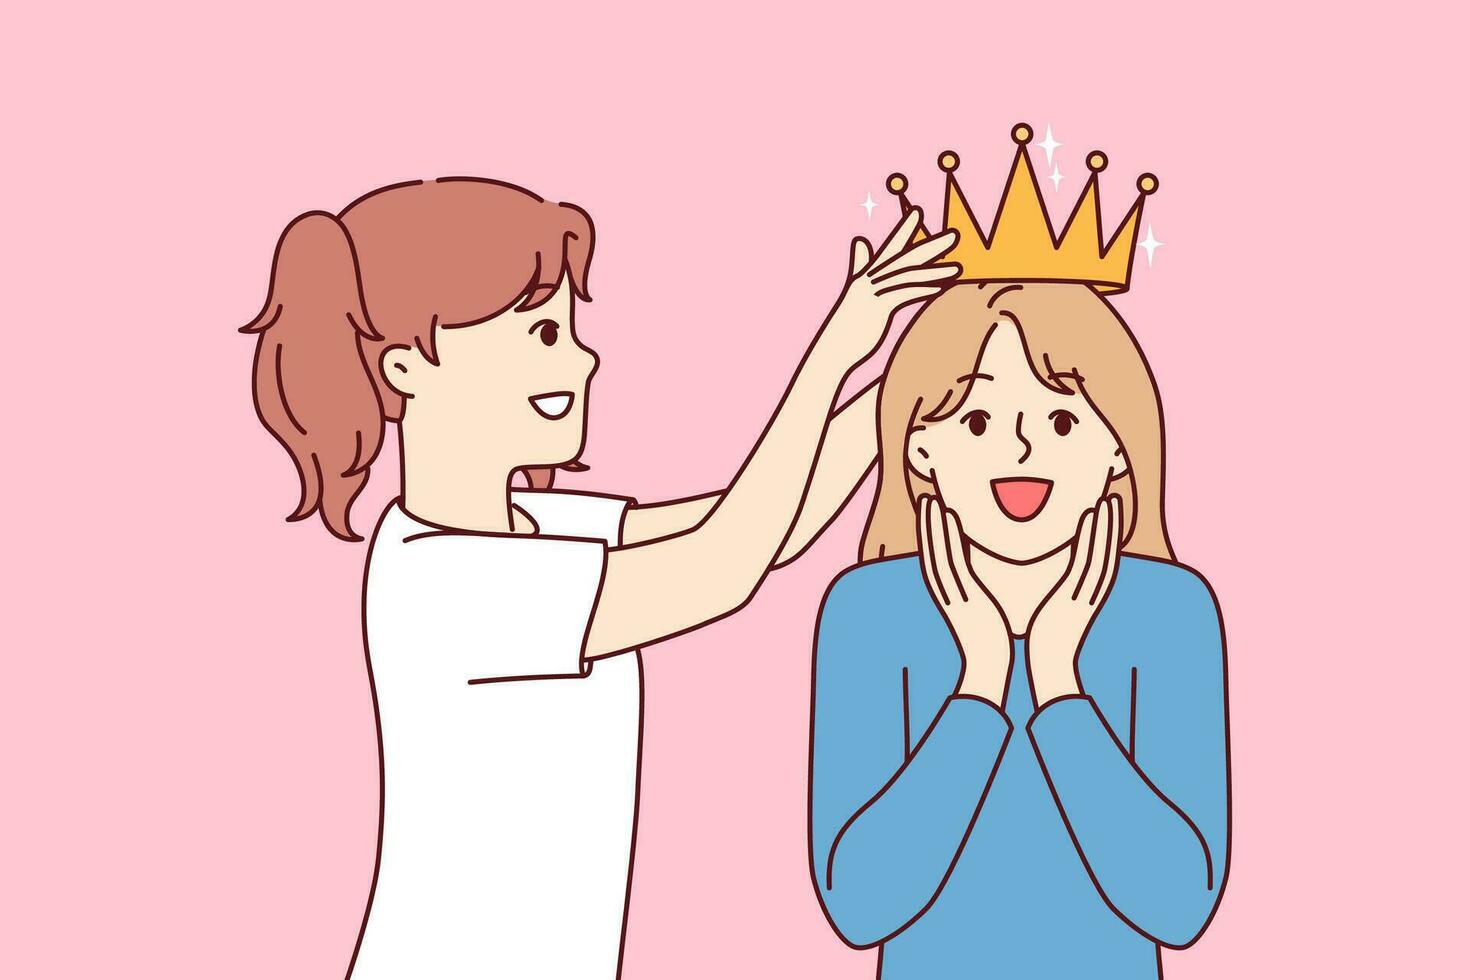 wenig Mädchen setzt Krone auf überglücklich Schwestern Kopf während spielen Prinzessinnen von uralt Königreich vektor